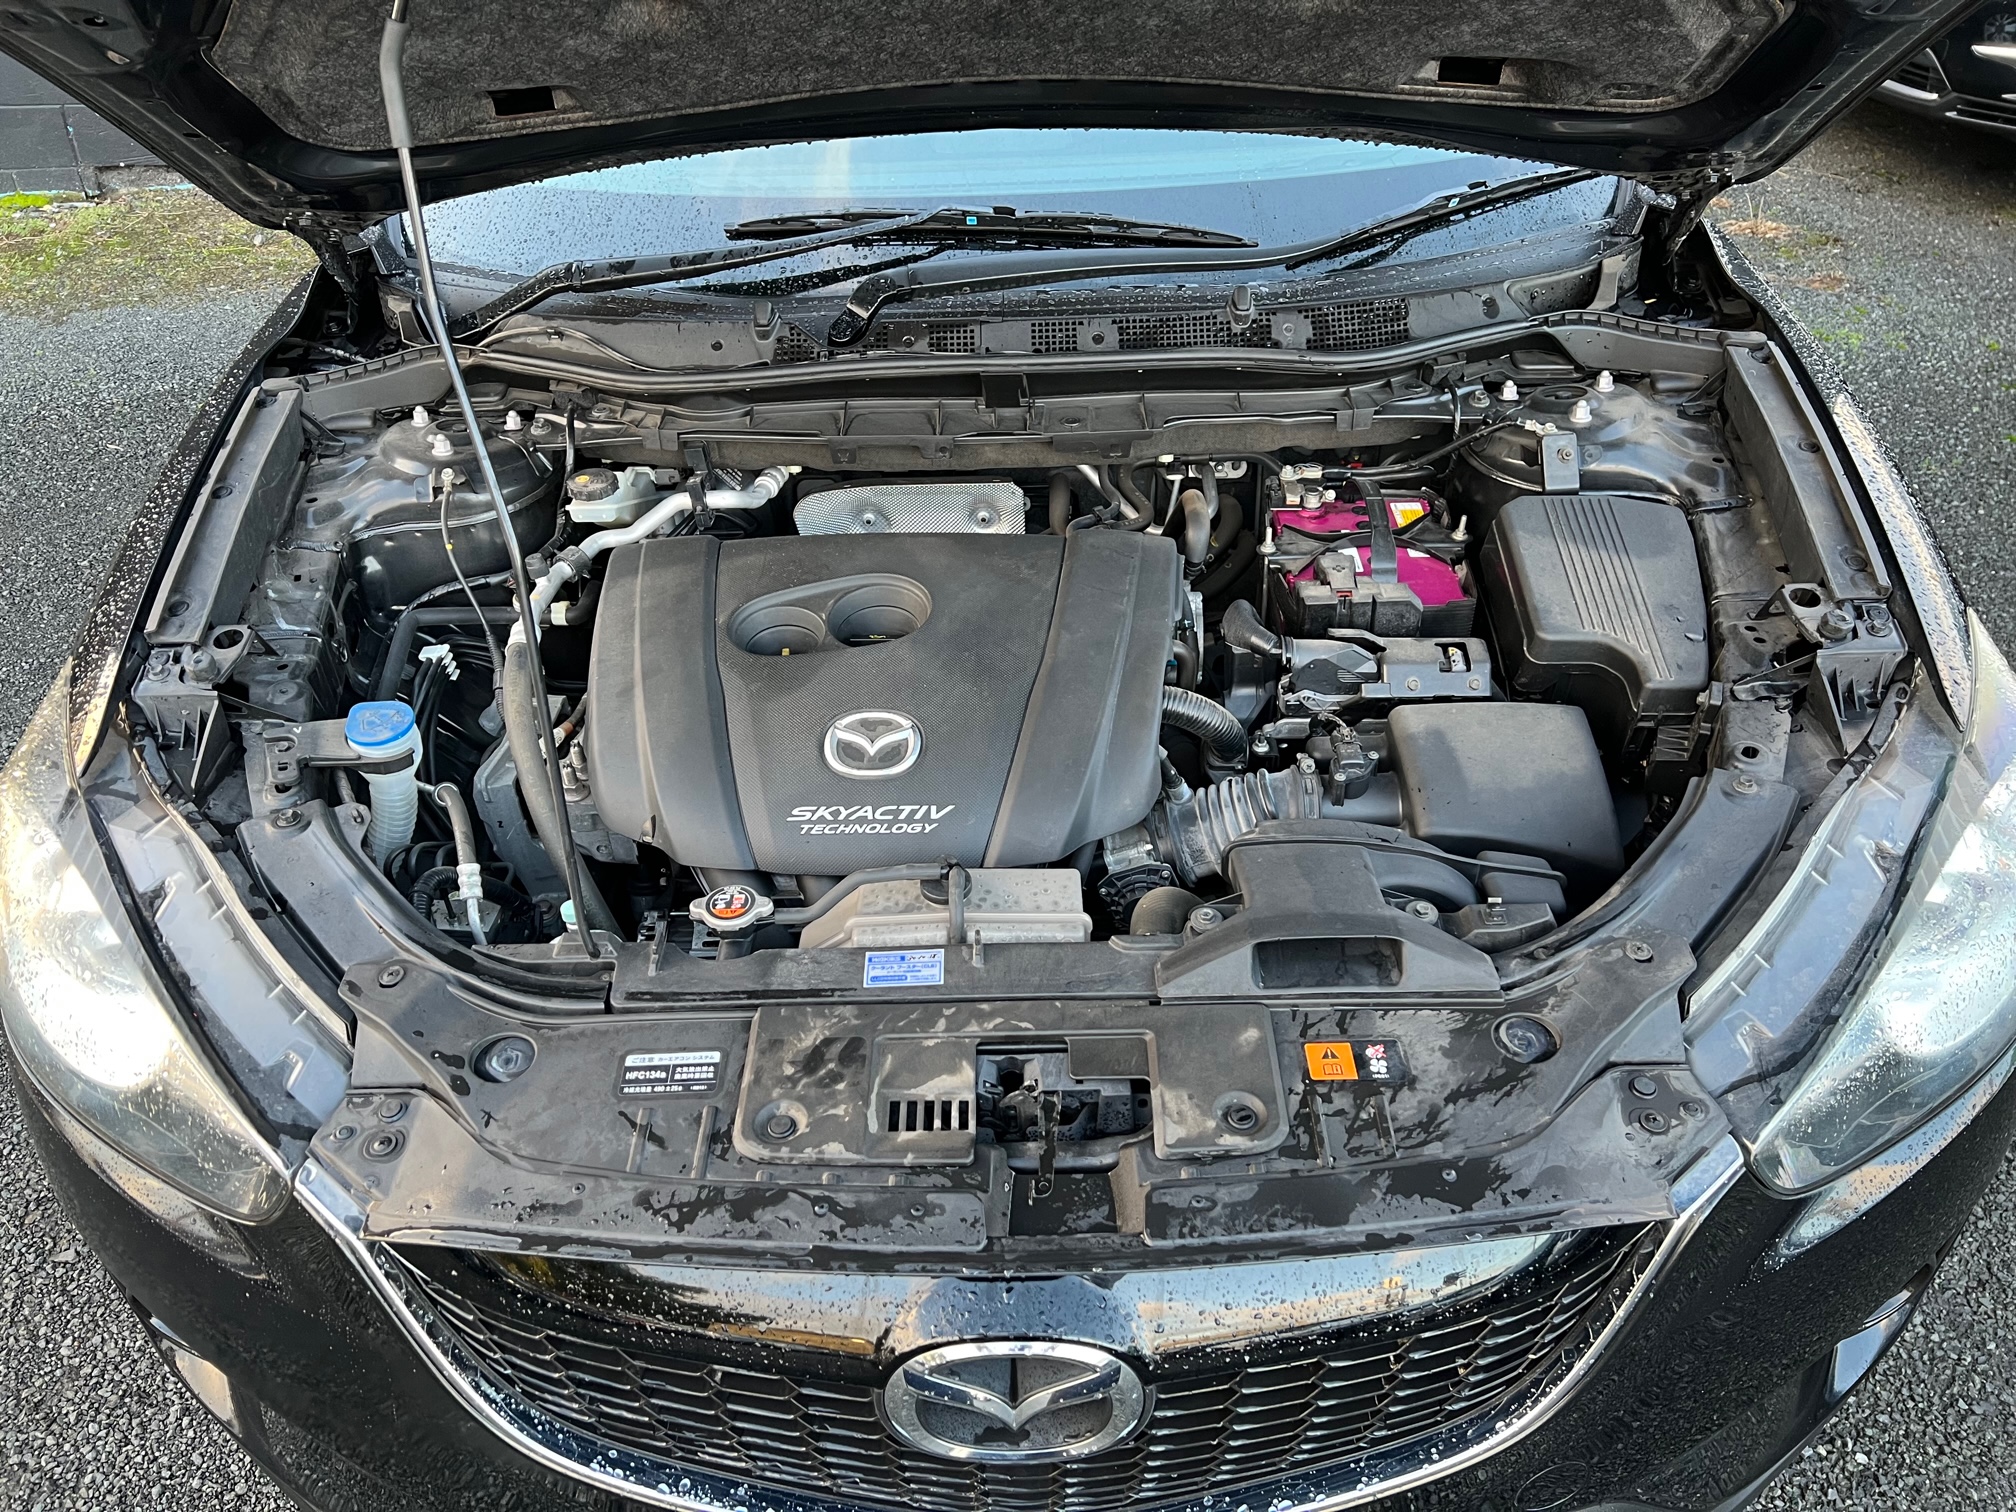 Mazda CX-5 2013 Image 7